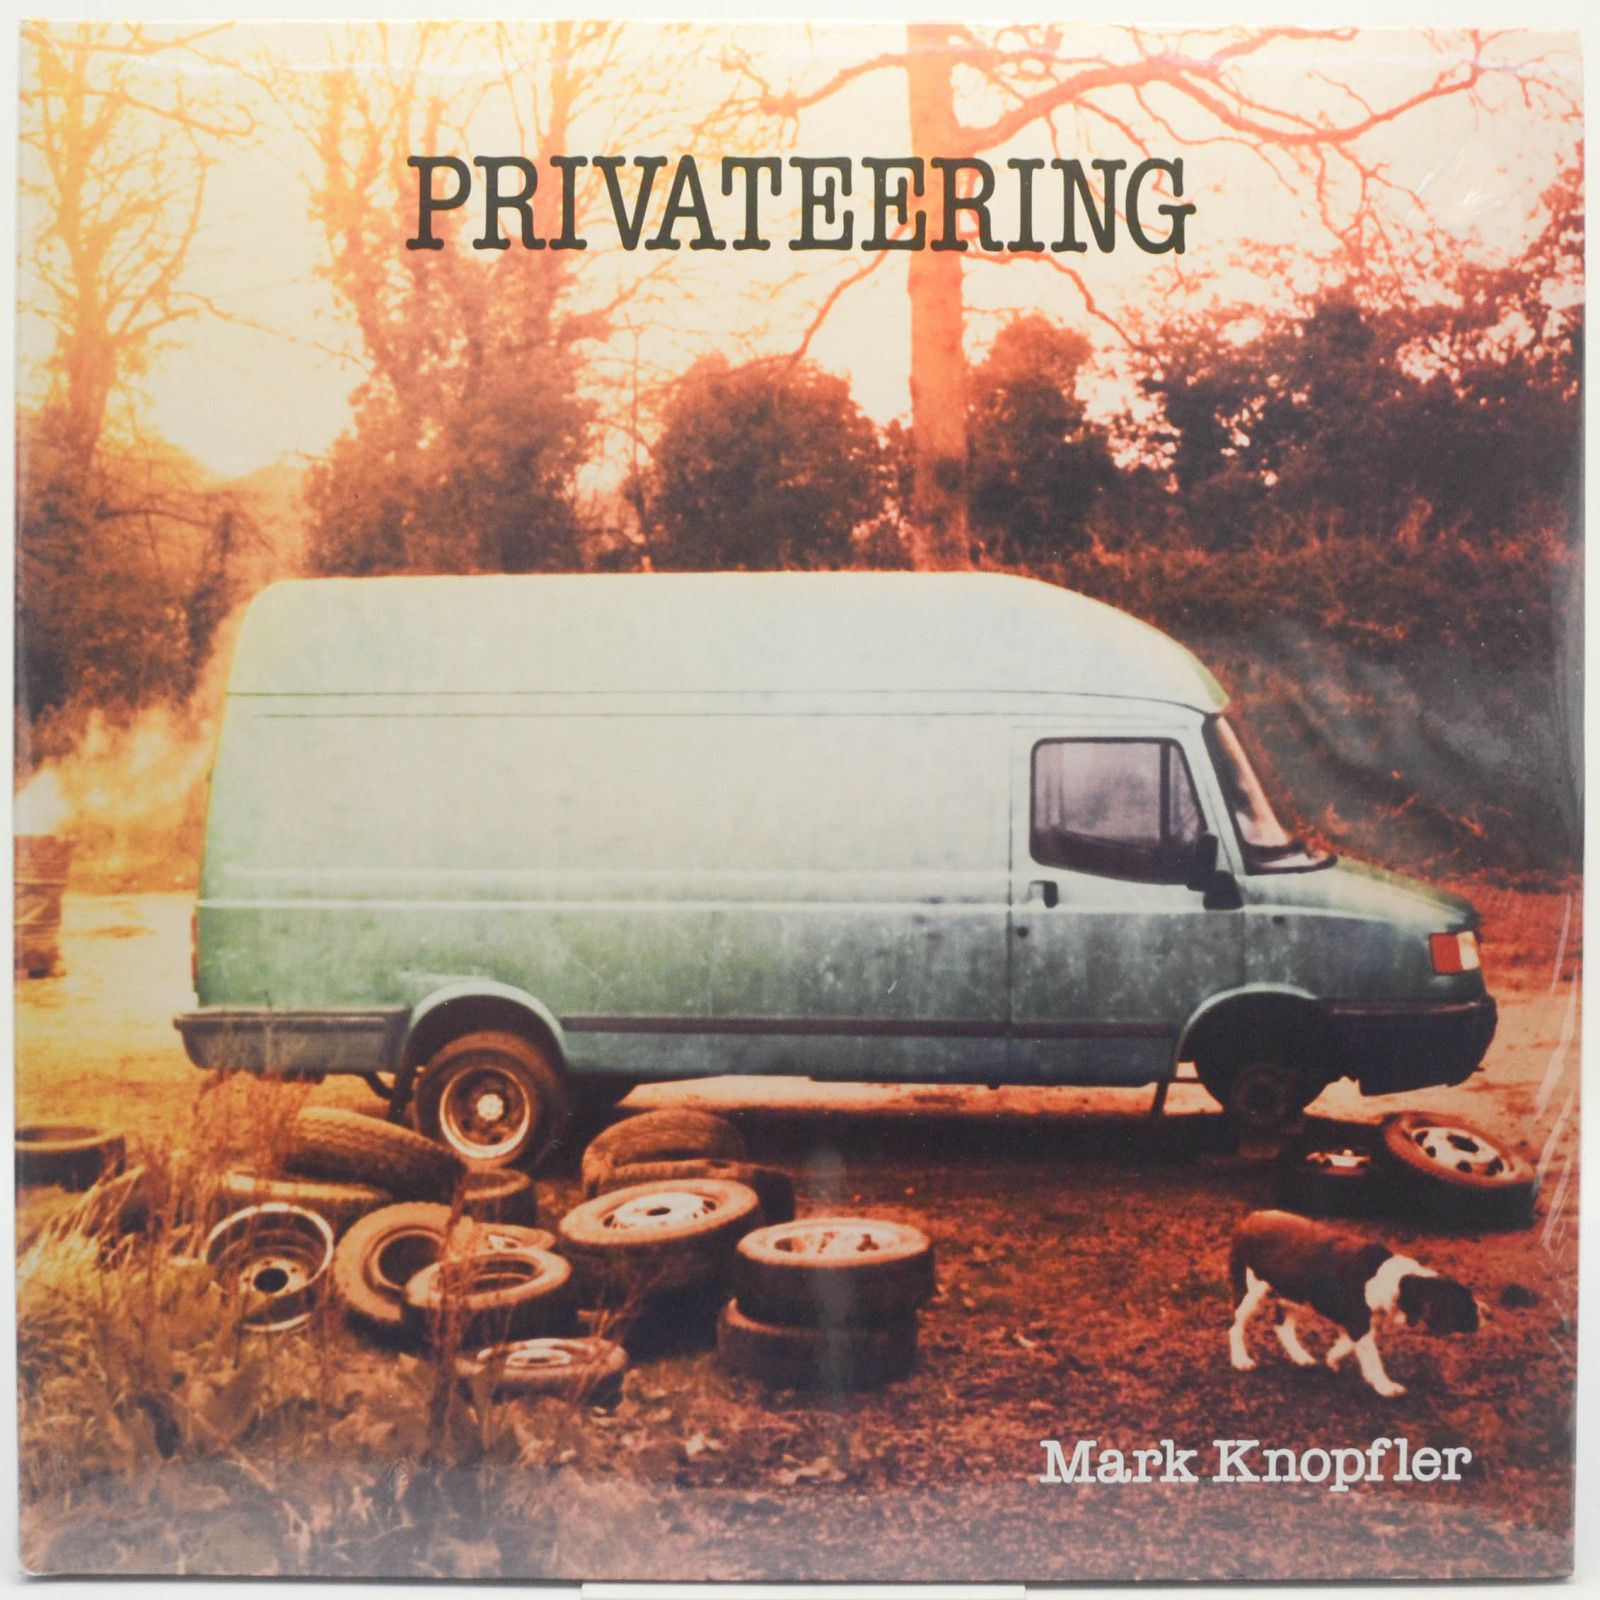 Mark Knopfler — Privateering (2LP), 2012